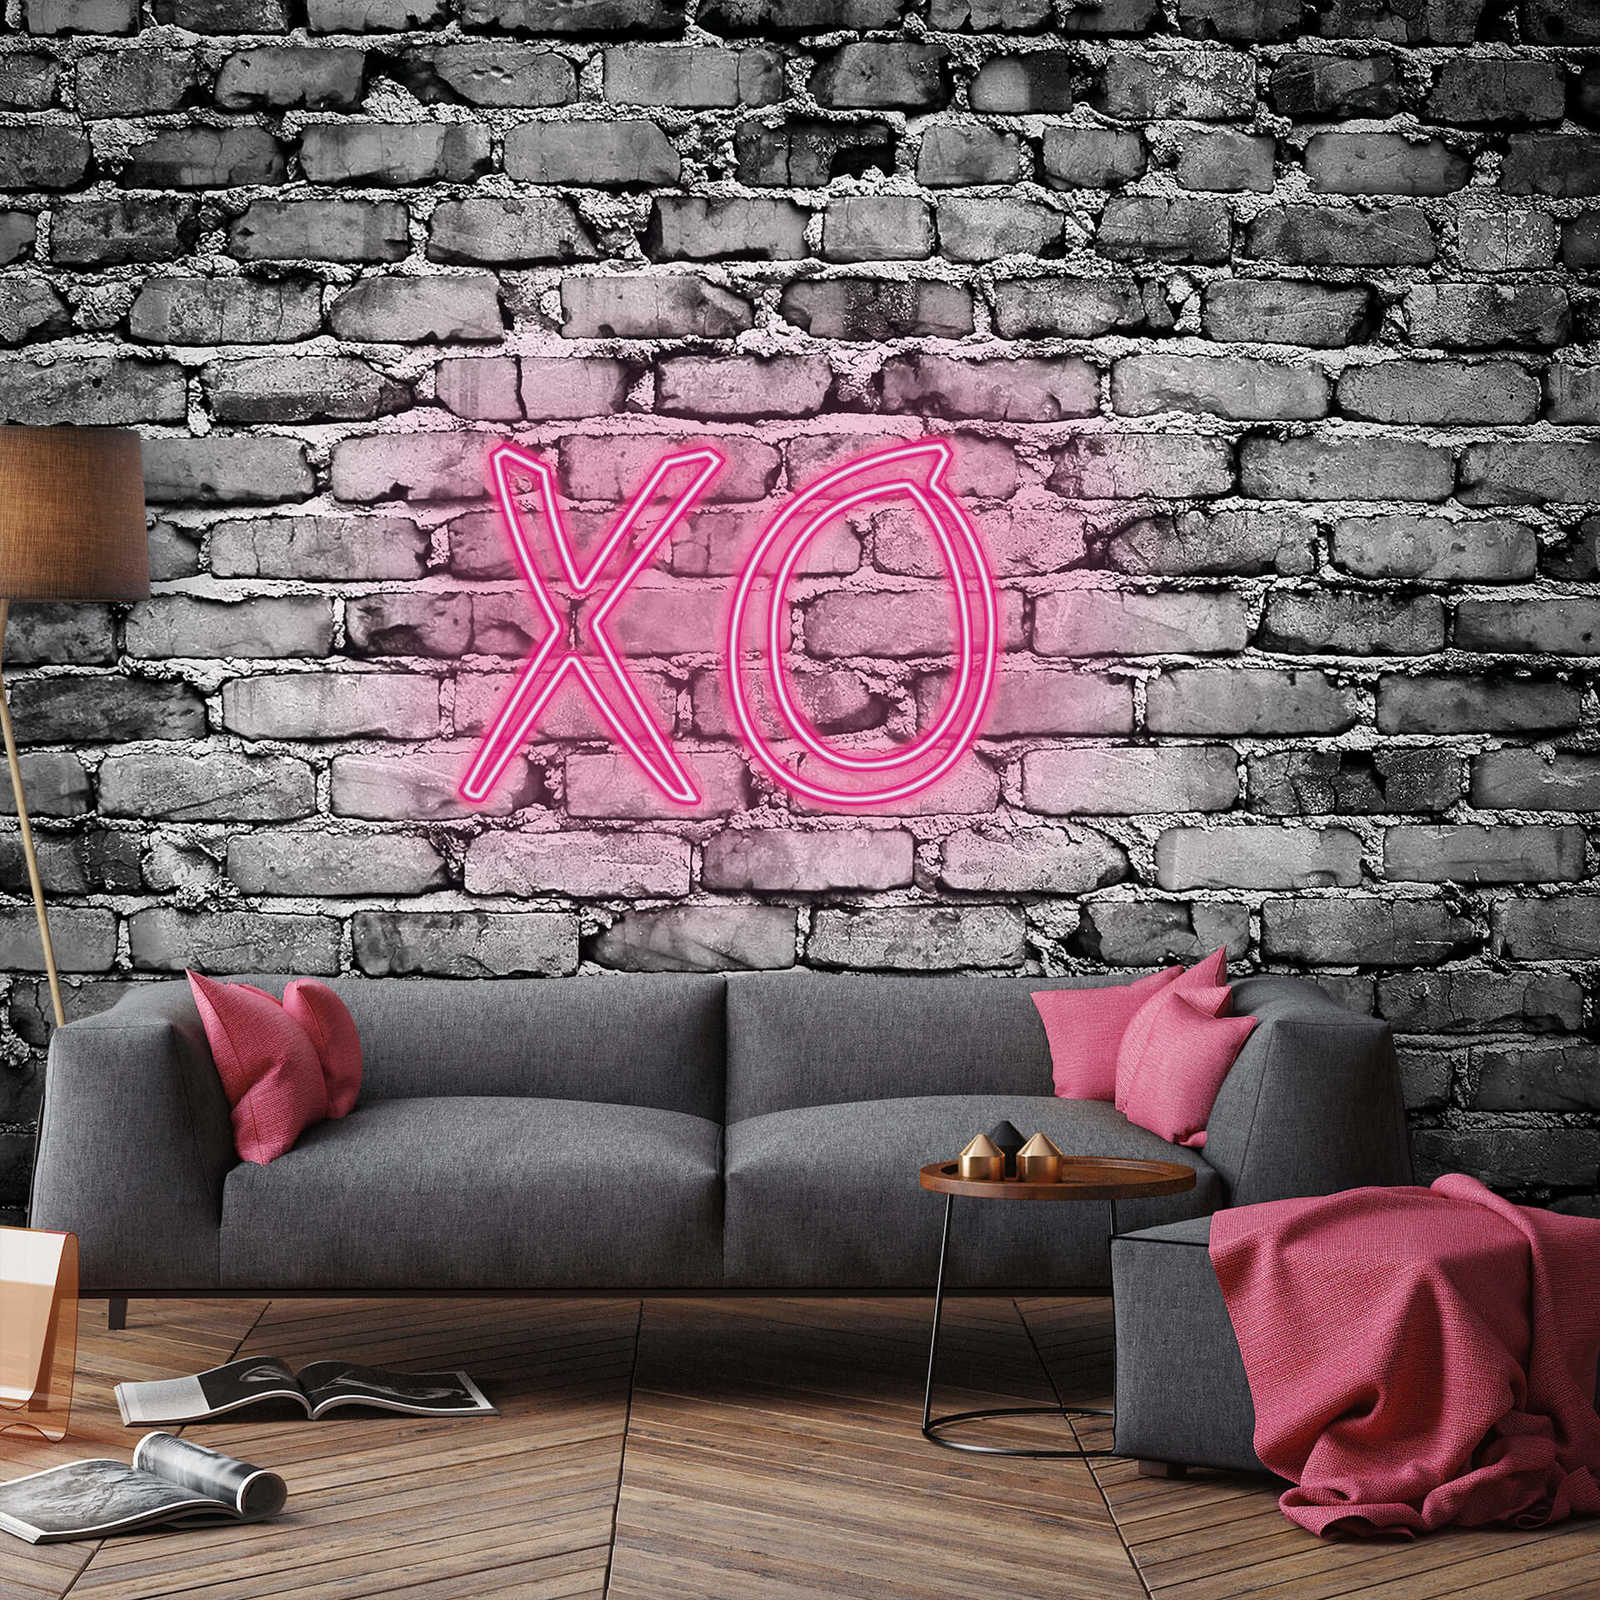             Mural con letras iluminadas XO
        